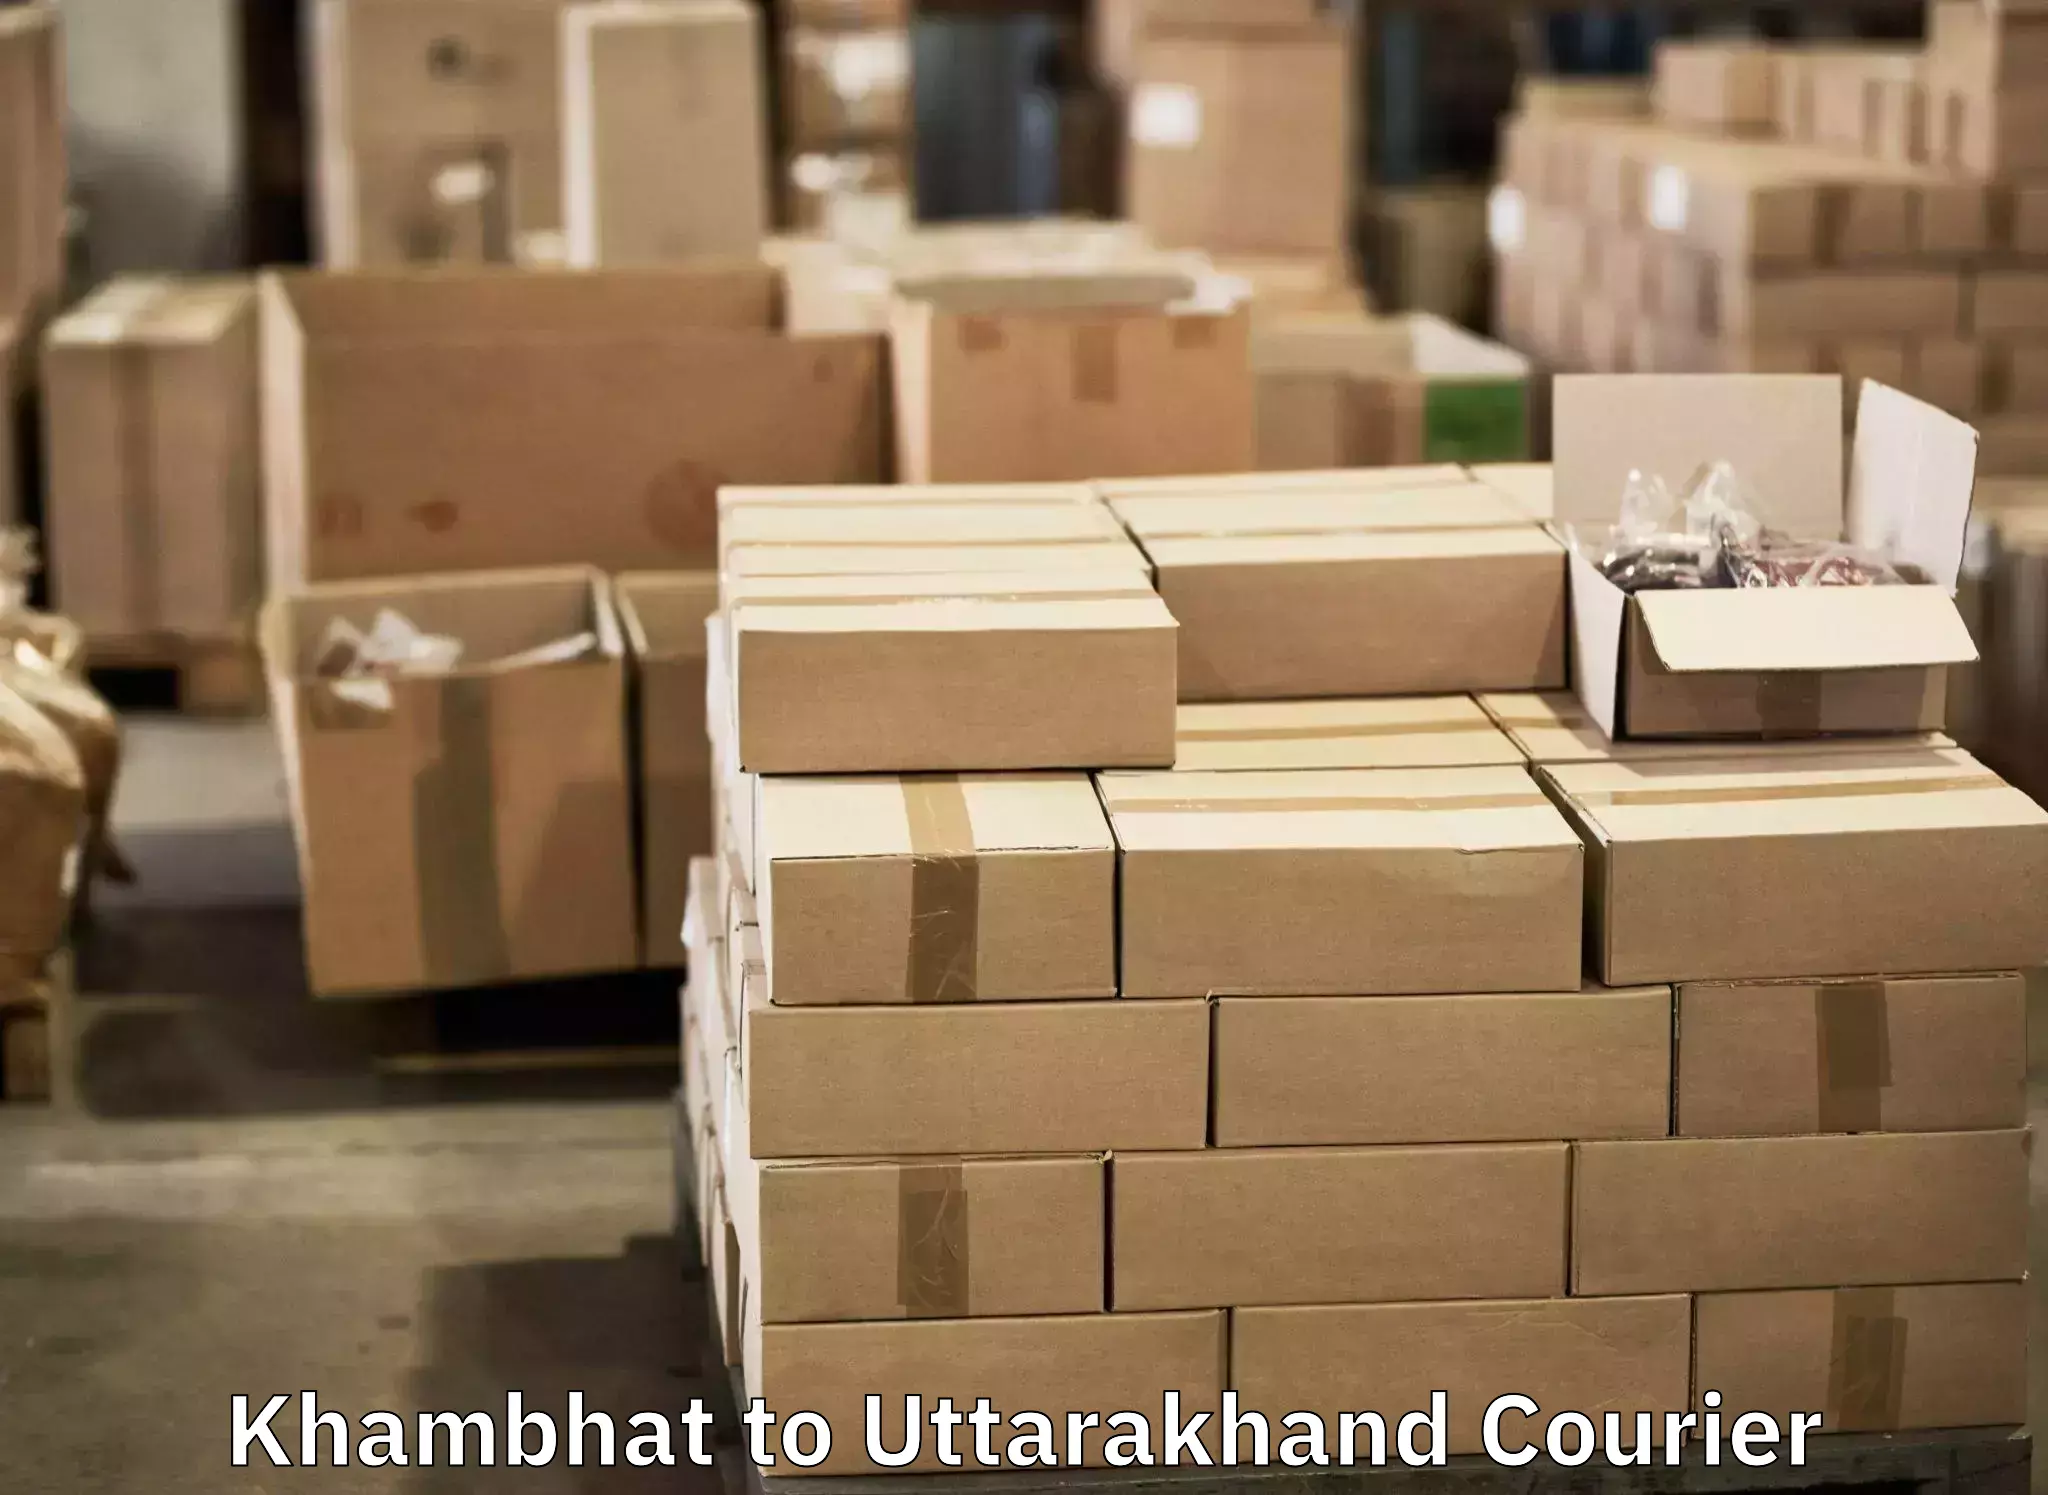 Urgent luggage shipment Khambhat to Lansdowne